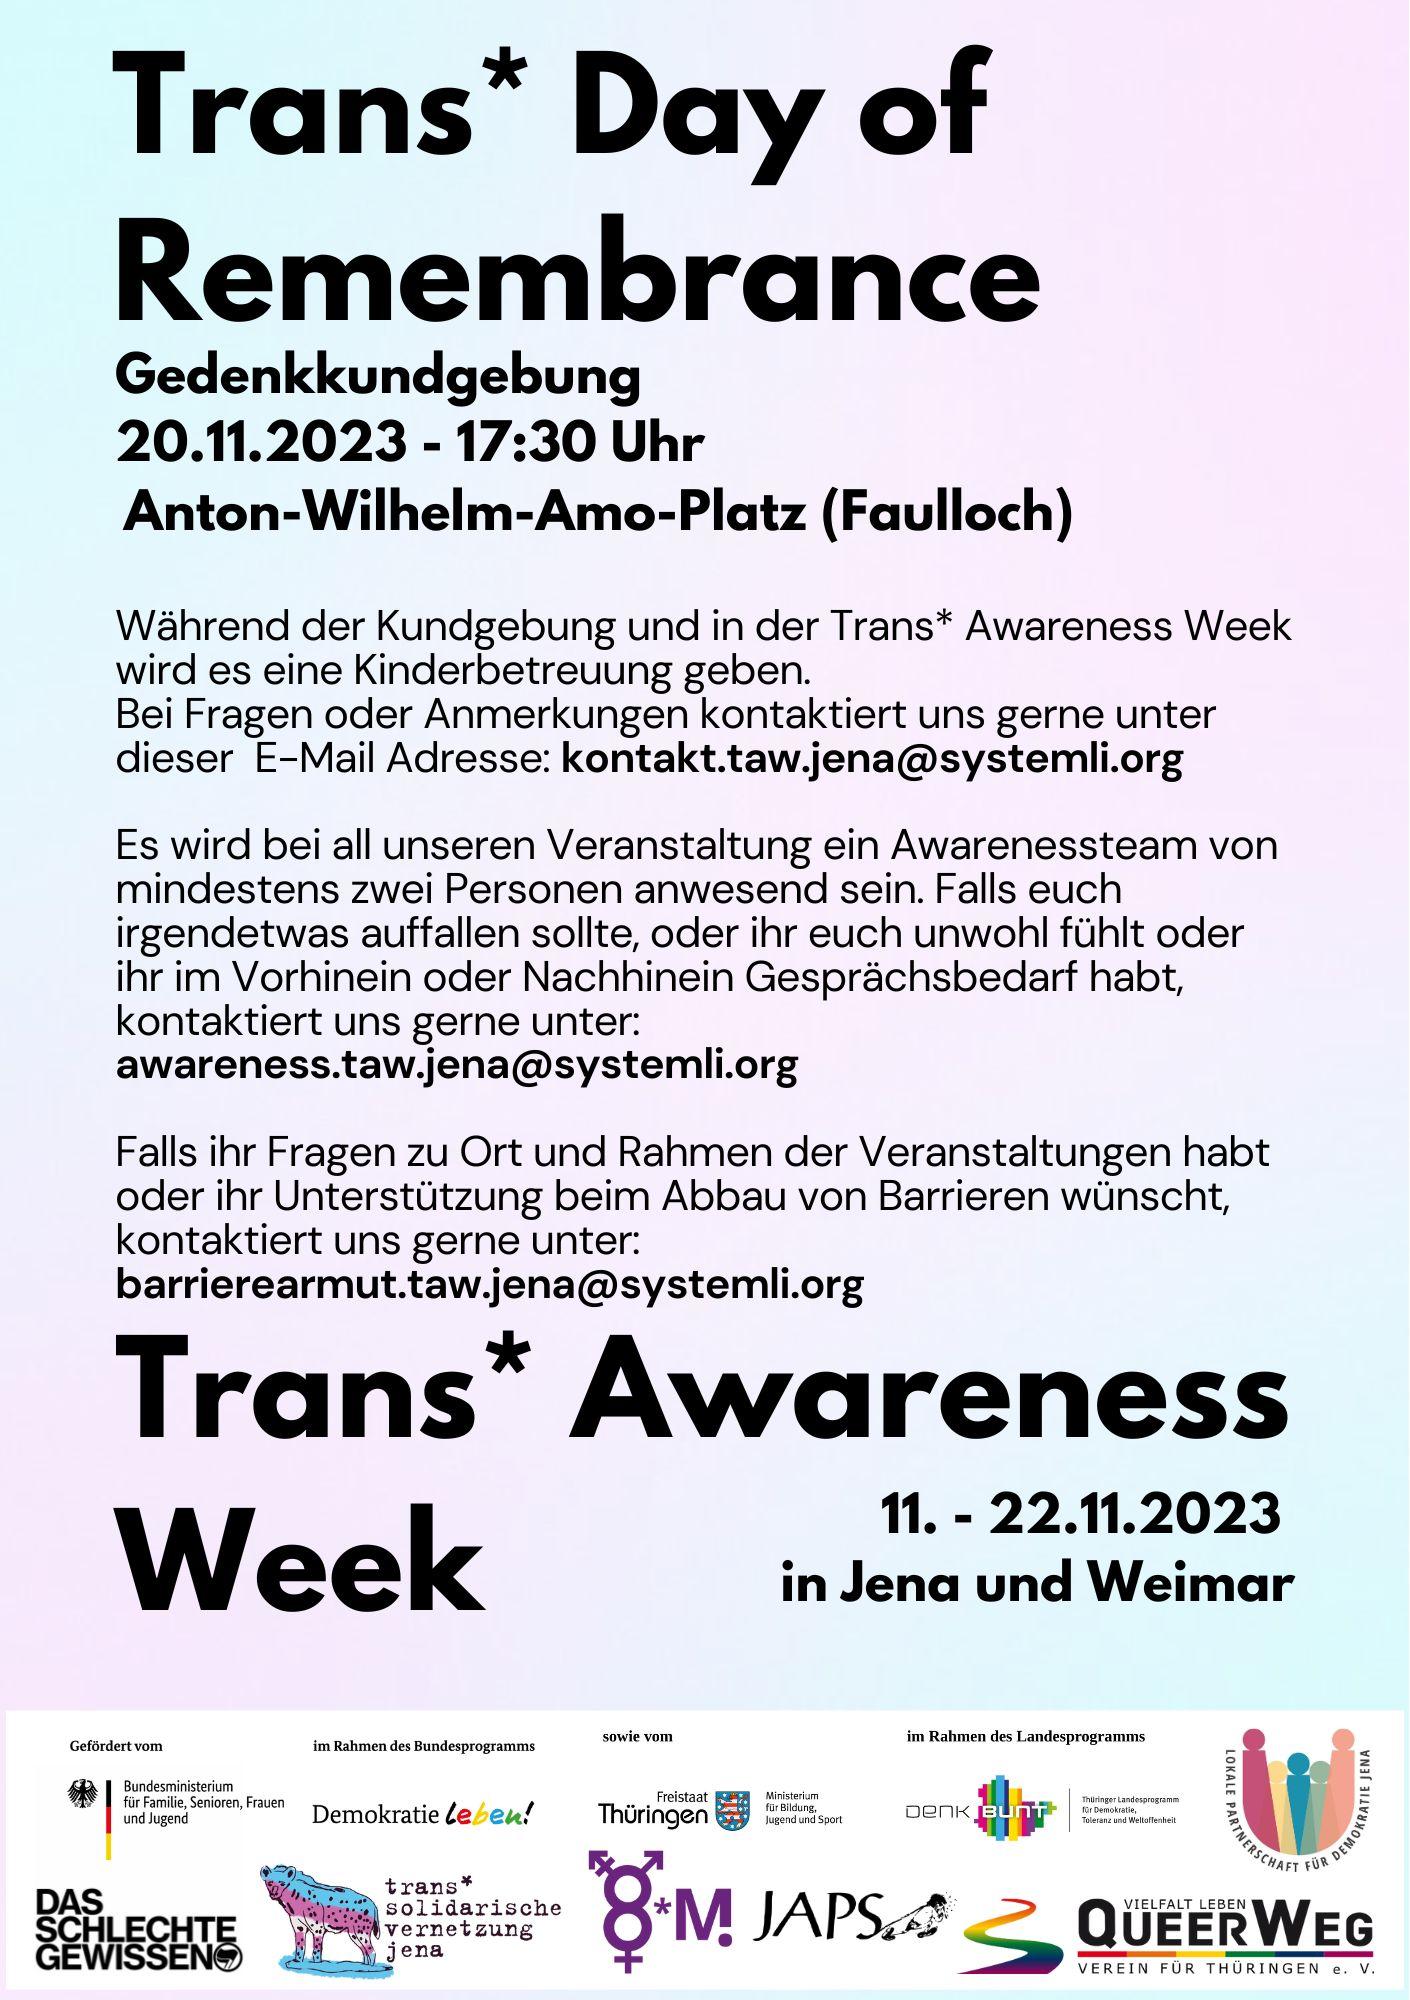 Schlichtes Poster mit pink/blauem Hintergrund zum Trans* Day of Remembrance und die Trans* Awareness Week 2023. Darauf steht: "Trans* Day of Remembrance, Gedenkkundgebung 20.11.2023 - 17:30 Uhr Anton-Wilhelm-Amo-Platz (Faulloch)" sowie "Während der Kundgebung und in der Trans* Awareness Week wird es eine Kinderbetreuung geben. Bei Fragen oder Anmerkungen kontaktiert uns gerne unter dieser E-Mail Adresse: kontakt.taw.jena@systemli.org Es wird bei all unseren Veranstaltung ein Awarenessteam von mindestens zwei Personen anwesend sein. Falls euch irgendetwas auffallen sollte, oder ihr euch unwohl fühlt oder ihr im Vorhinein oder Nachhinein Gesprächsbedarf habt, kontaktiert uns gerne unter: awareness.taw.jena@systemli.org Falls ihr Fragen zu Ort und Rahmen der Veranstaltungen habt oder ihr Unterstützung beim Abbau von Barrieren wünscht, kontaktiert uns gerne unter: barrierearmut.taw.jena@systemli.org" und "Während der Kundgebung und in der Trans* Awareness Week wird es eine Kinderbetreuung geben. Bei Fragen oder Anmerkungen kontaktiert uns gerne unter dieser E-Mail Adresse: kontakt.taw.jena@systemli.org Es wird bei all unseren Veranstaltung ein Awarenessteam von mindestens zwei Personen anwesend sein. Falls euch irgendetwas auffallen sollte, oder ihr euch unwohl fühlt oder ihr im Vorhinein oder Nachhinein Gesprächsbedarf habt, kontaktiert uns gerne unter: awareness.taw.jena@systemli.org Falls ihr Fragen zu Ort und Rahmen der Veranstaltungen habt oder ihr Unterstützung beim Abbau von Barrieren wünscht, kontaktiert uns gerne unter: barrierearmut.taw.jena@systemli.org, 11. - 22.11.2023 in Jena und Weimar". Unten sind Logos der Beteiligten zu finden.